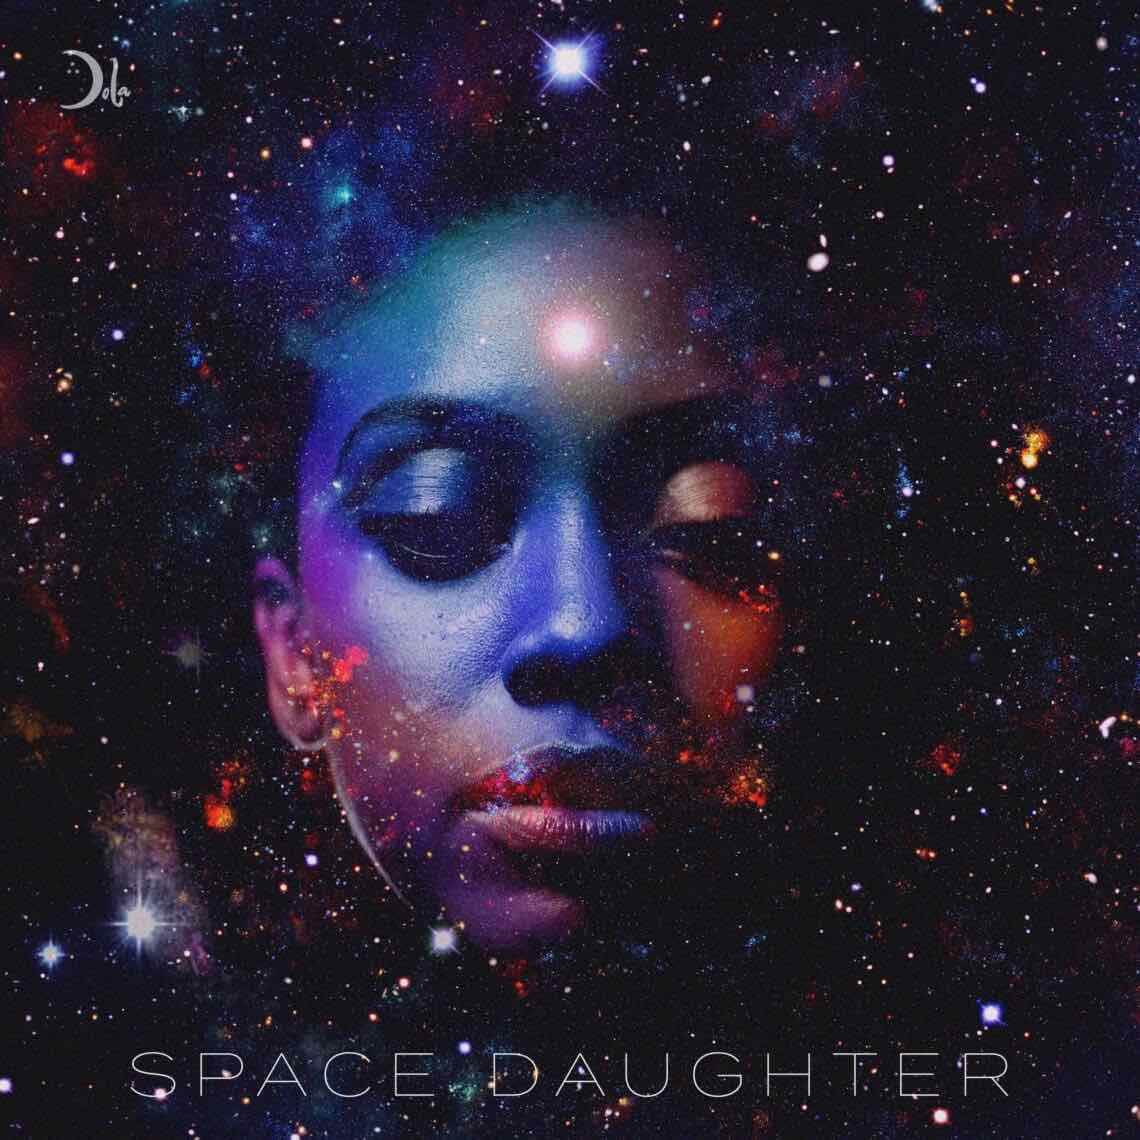 Dola Space Daughter album